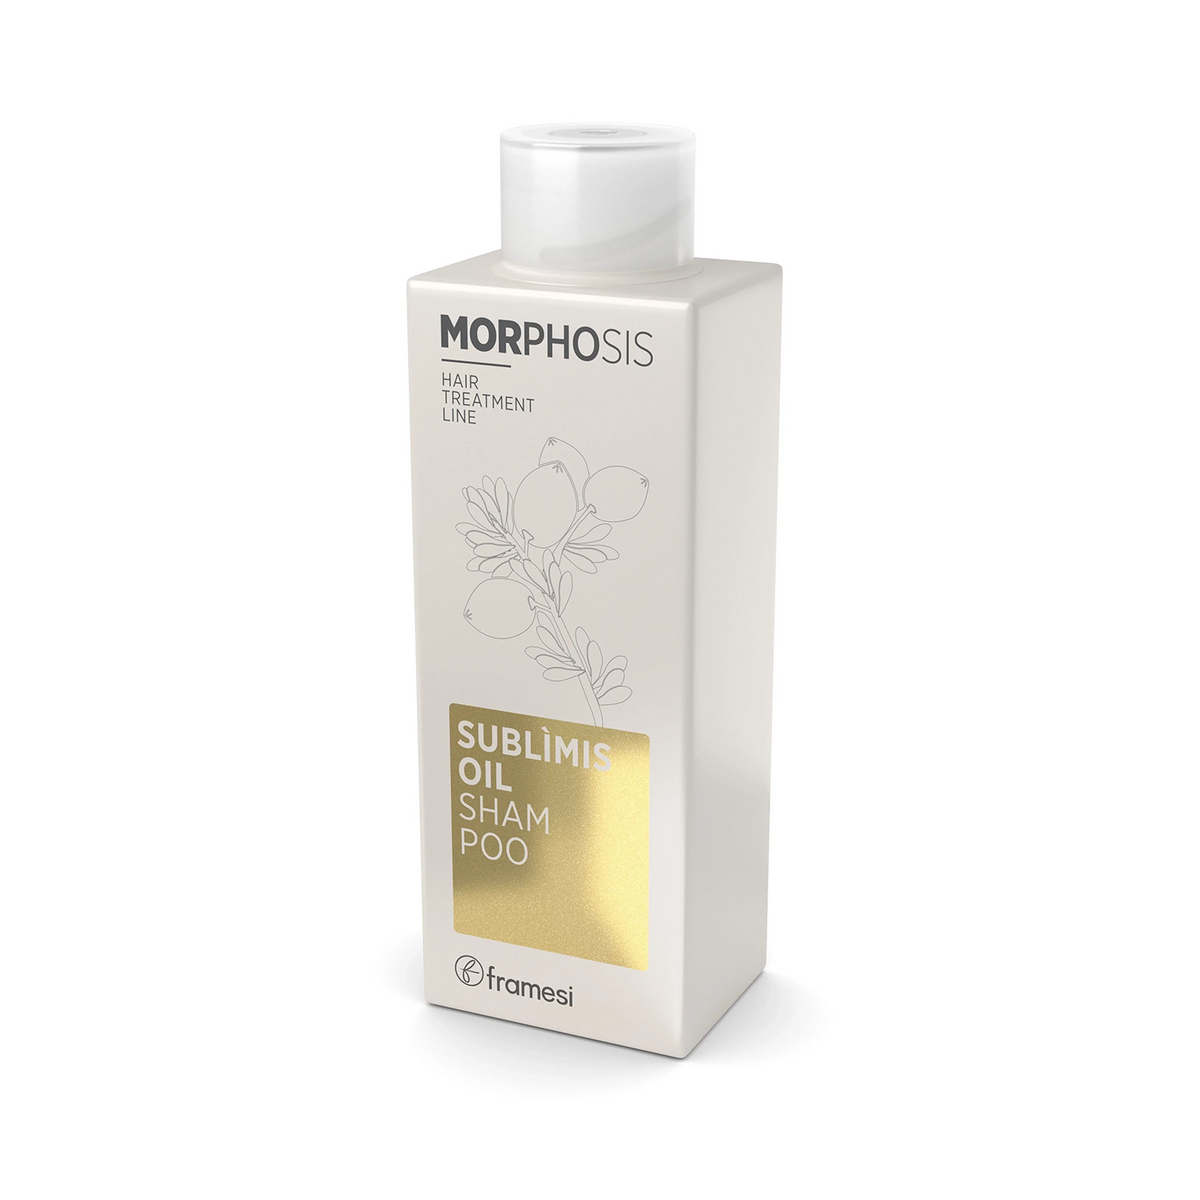 framesi-sublimis-oil-shampoo-1000-ml